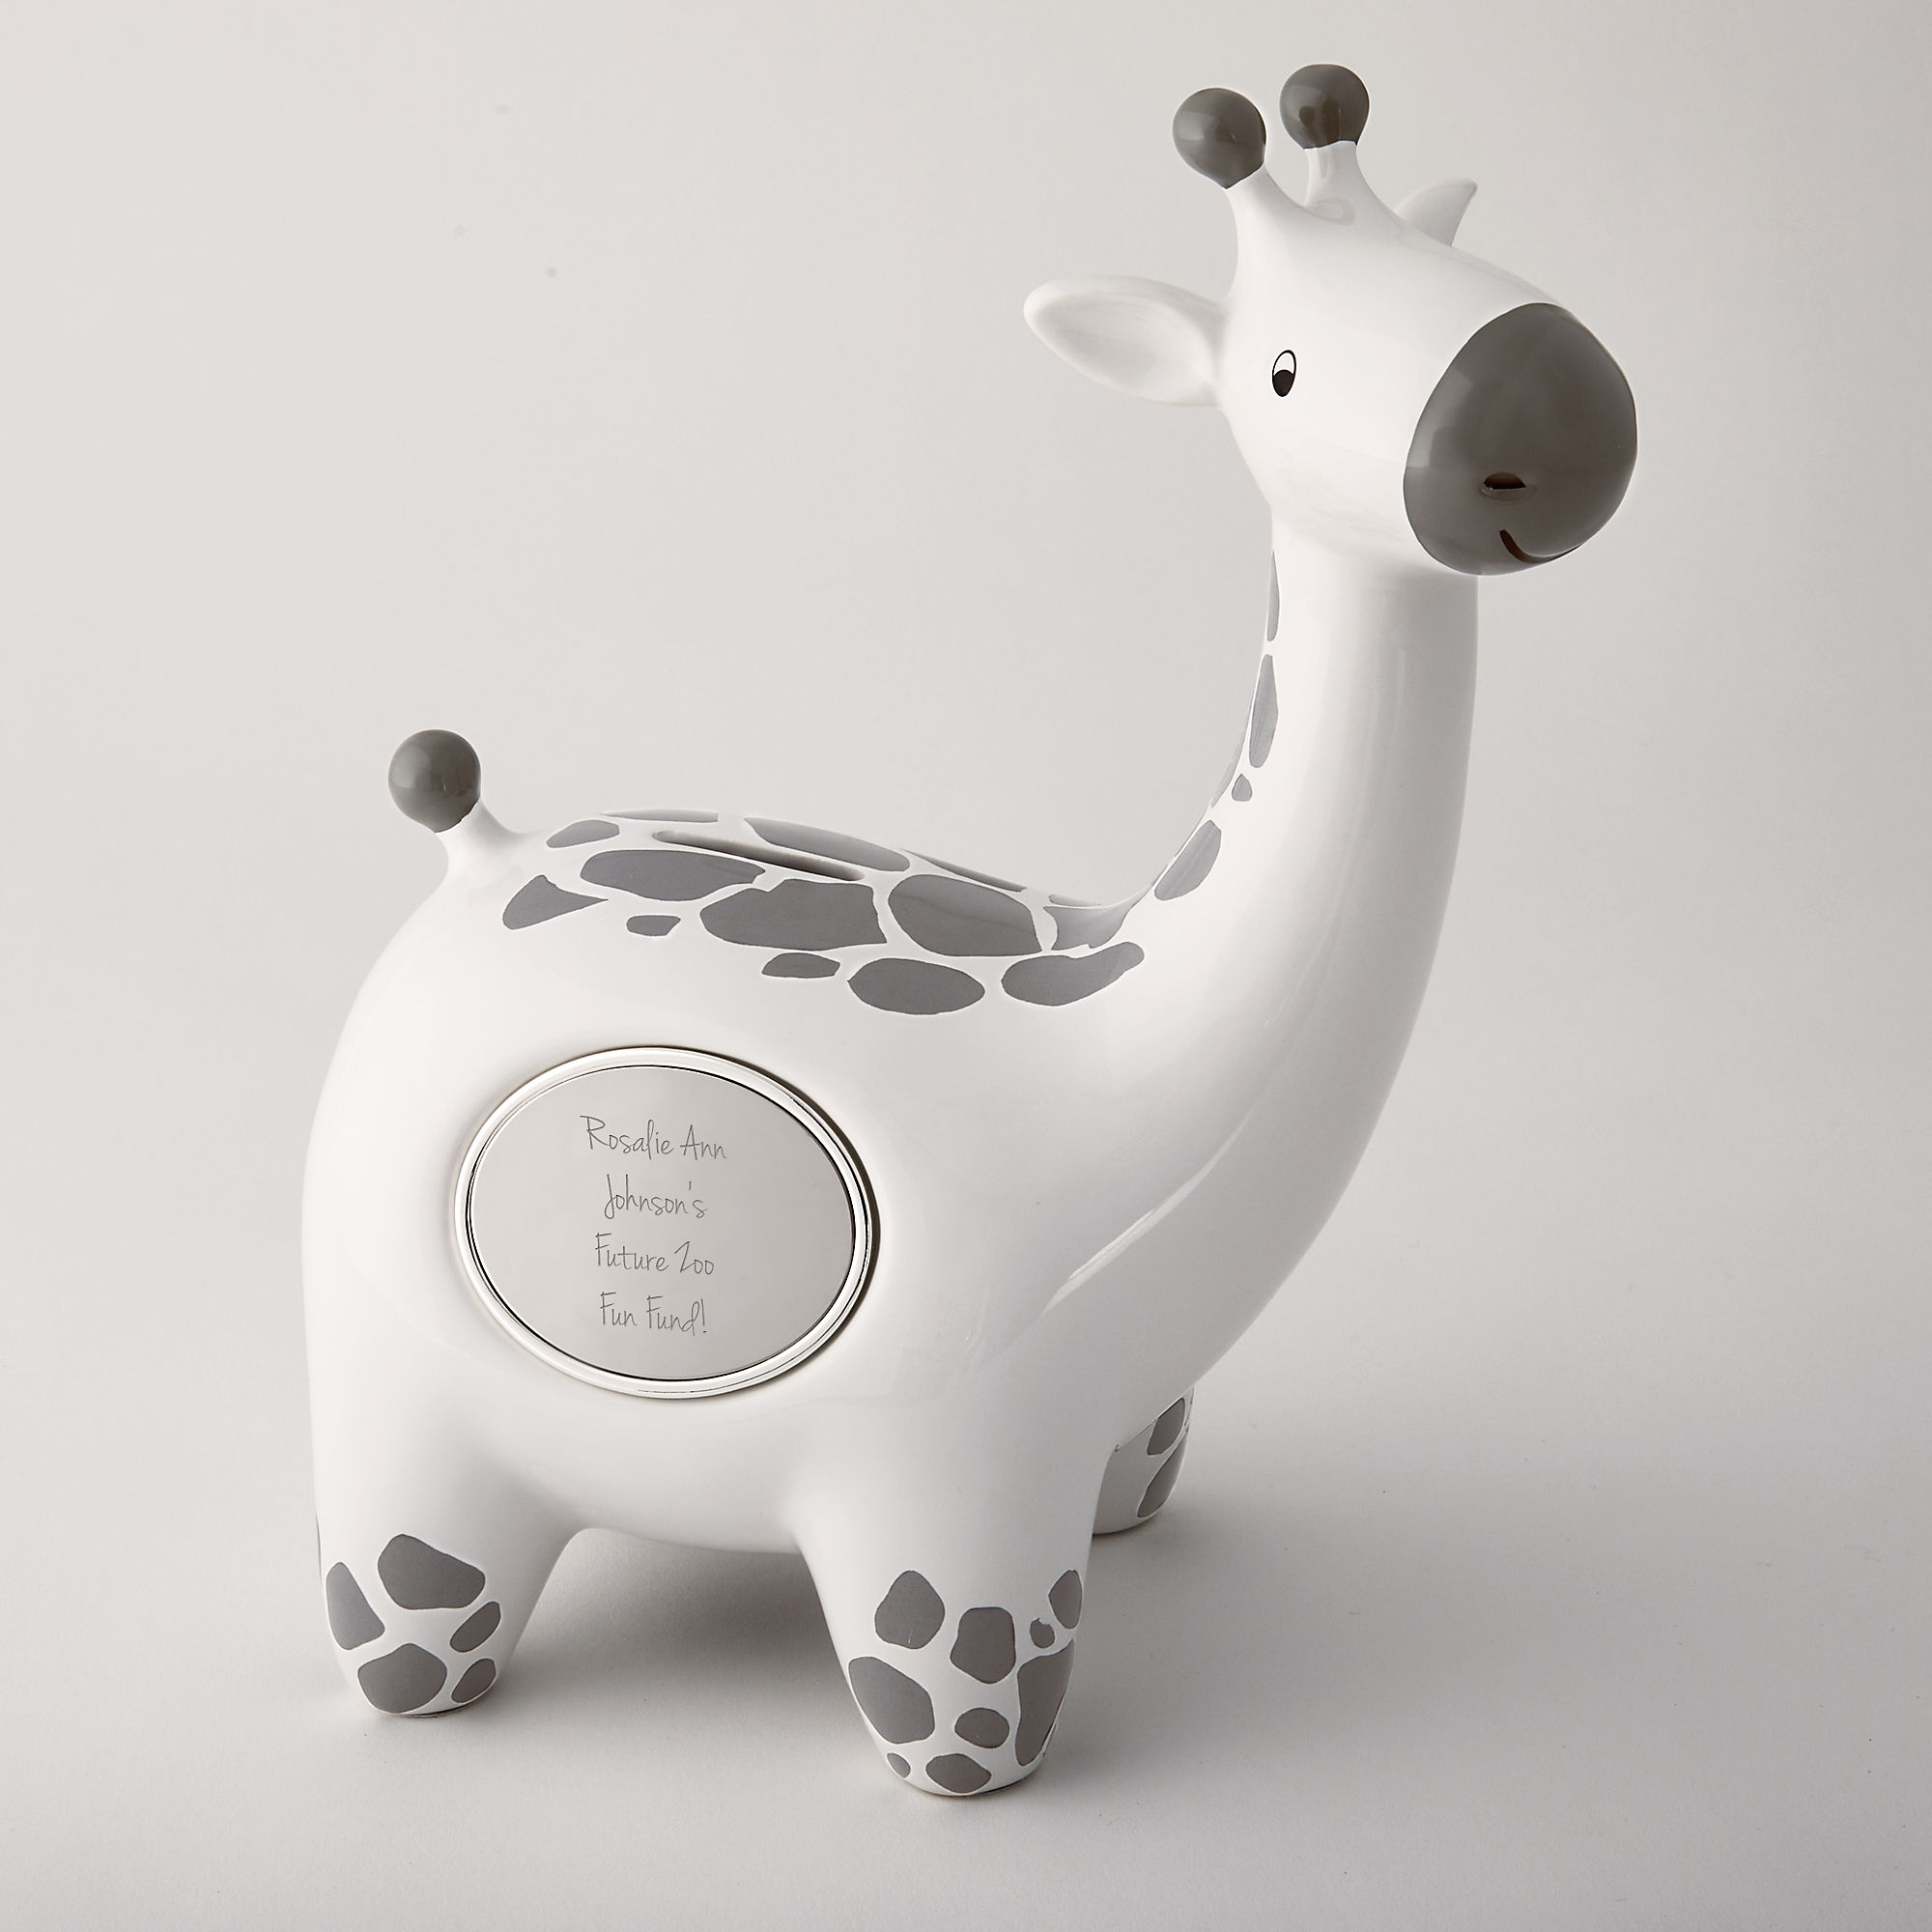 Personalised safari giraffe Money coin box Custom Name Money Saving Box HAG9983 ceramic piggy bank children's Birthday Gift